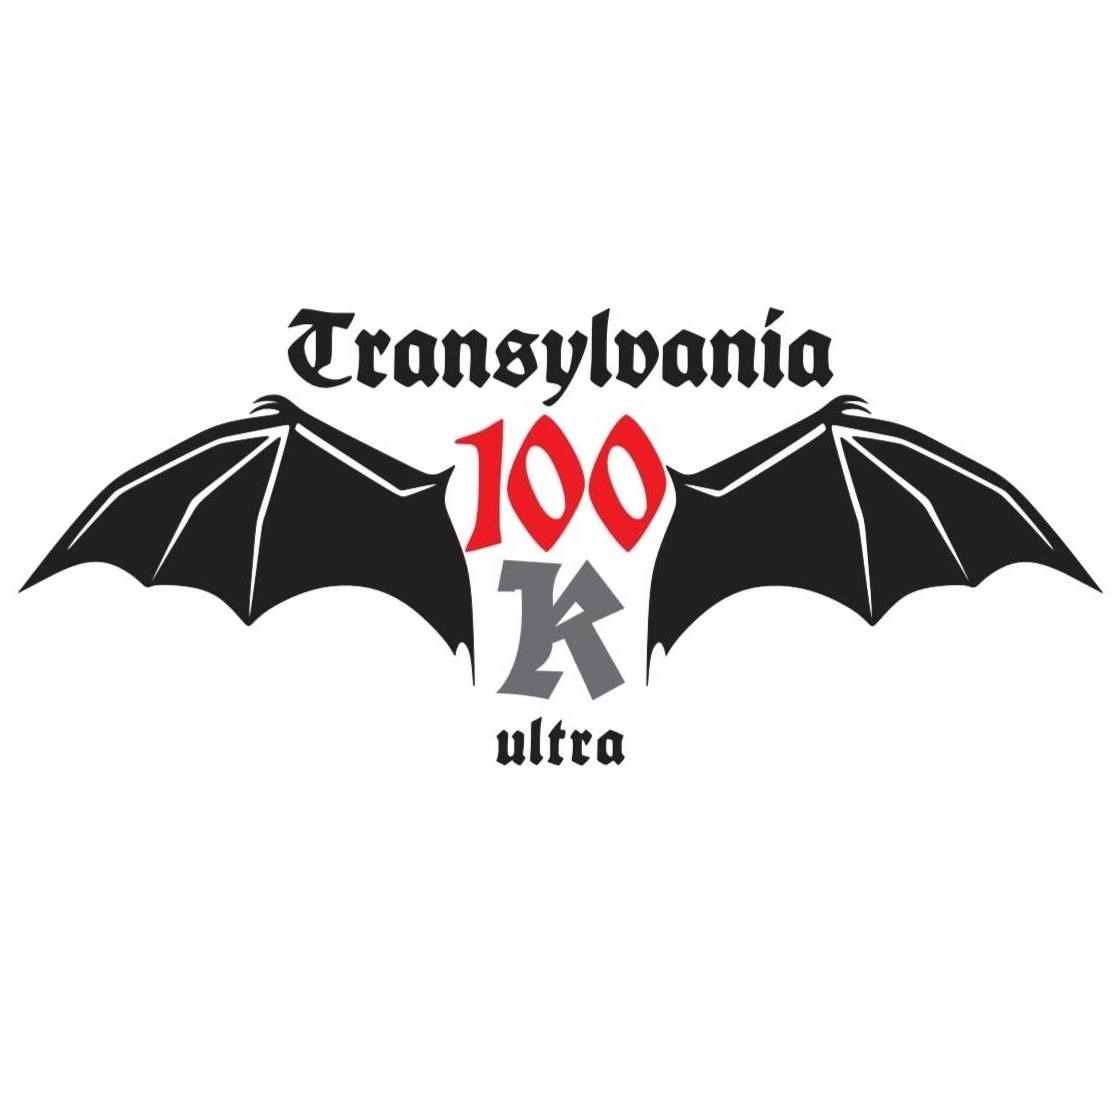 Transylvania 100 2022